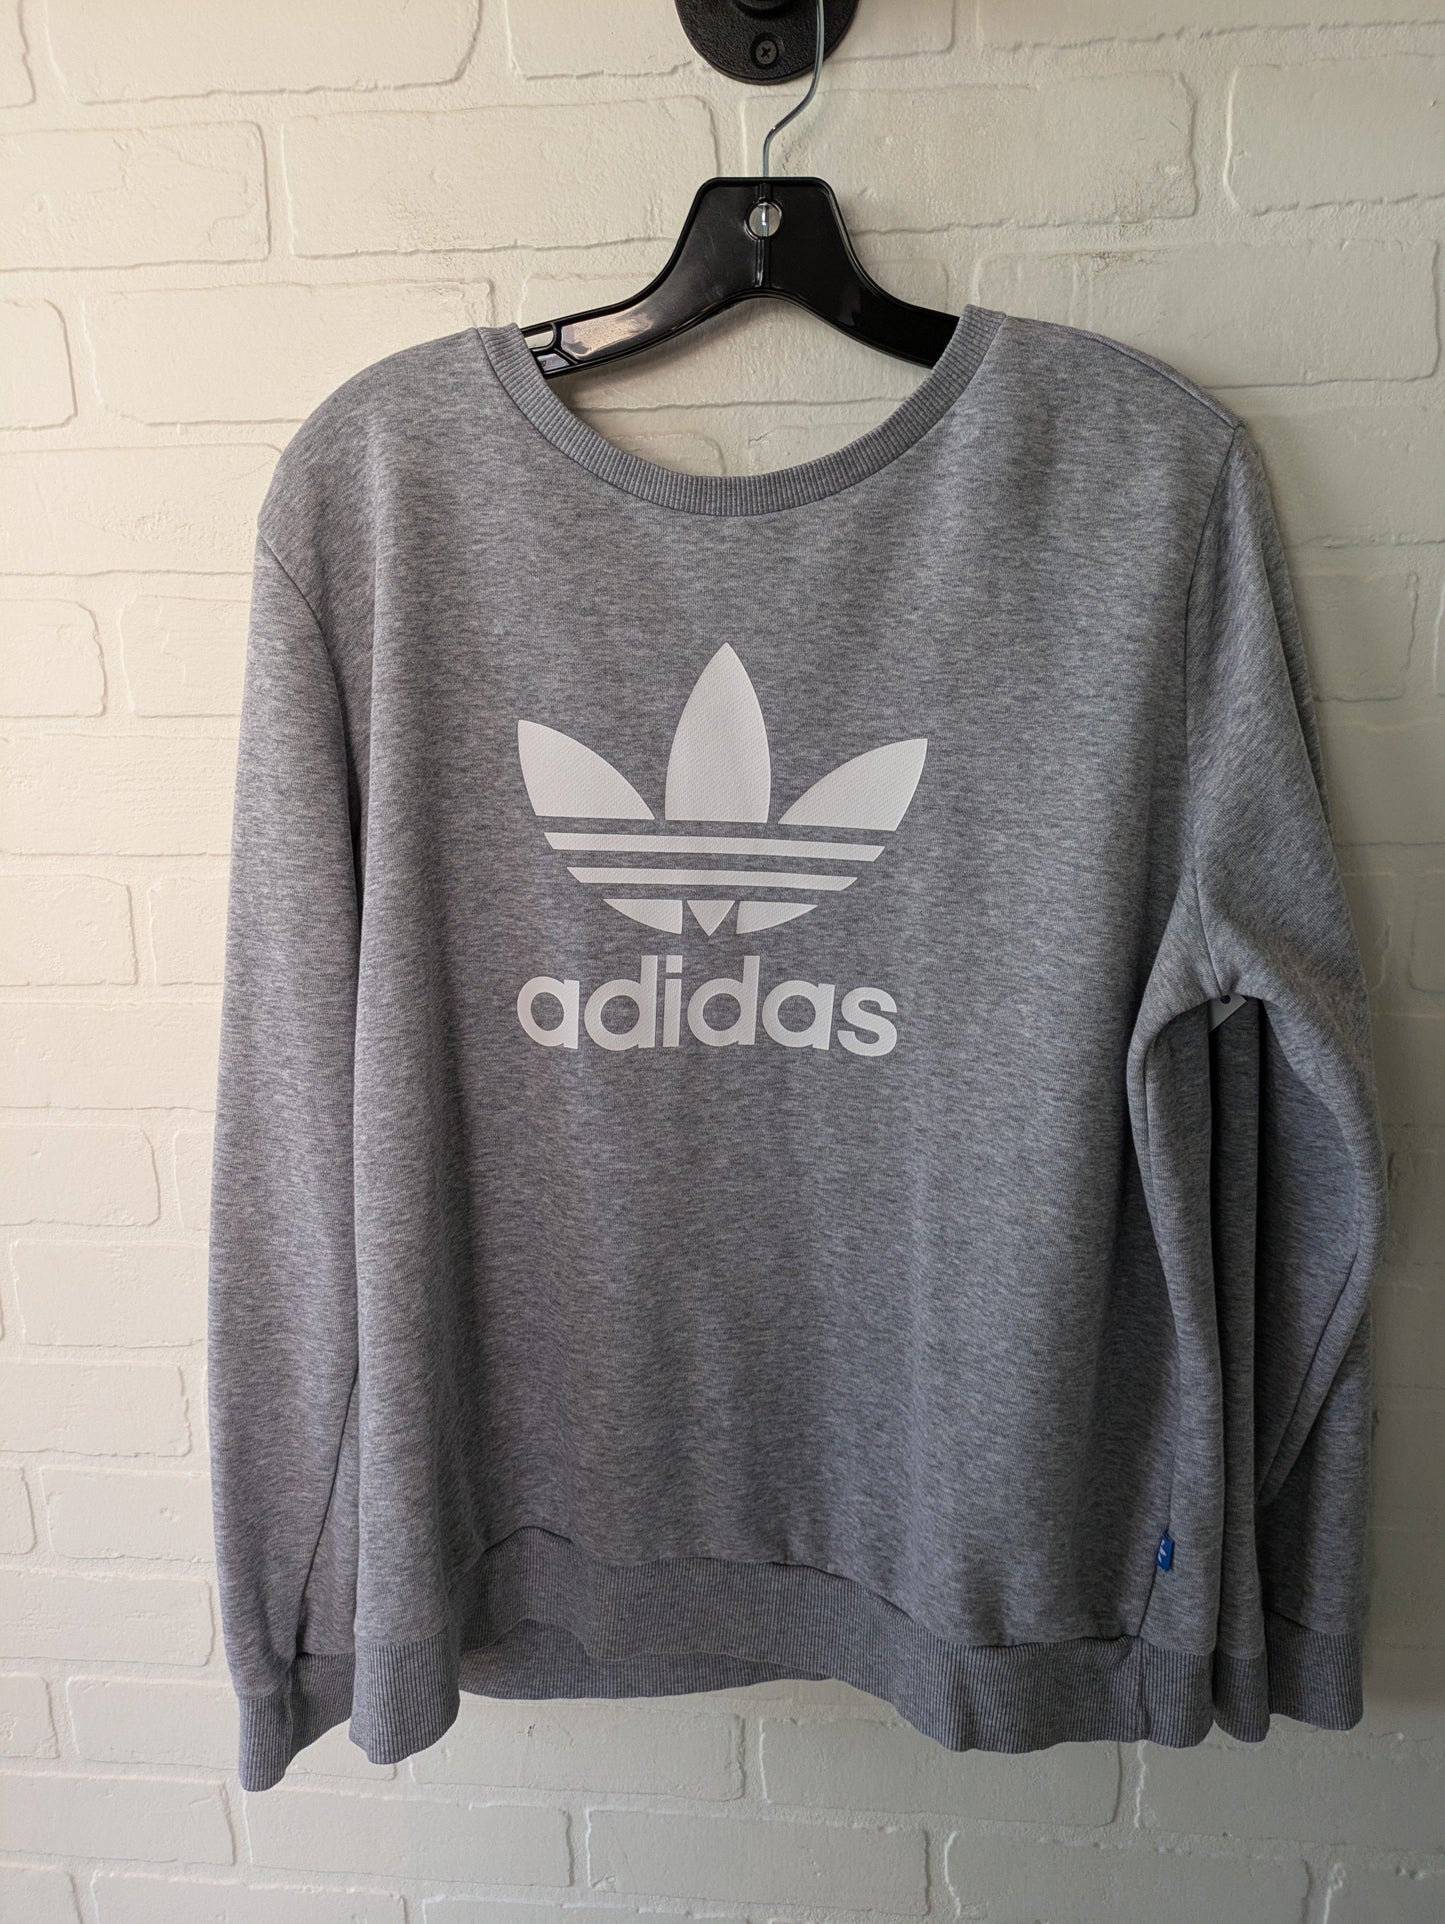 Grey Athletic Sweatshirt Crewneck Adidas, Size Xl